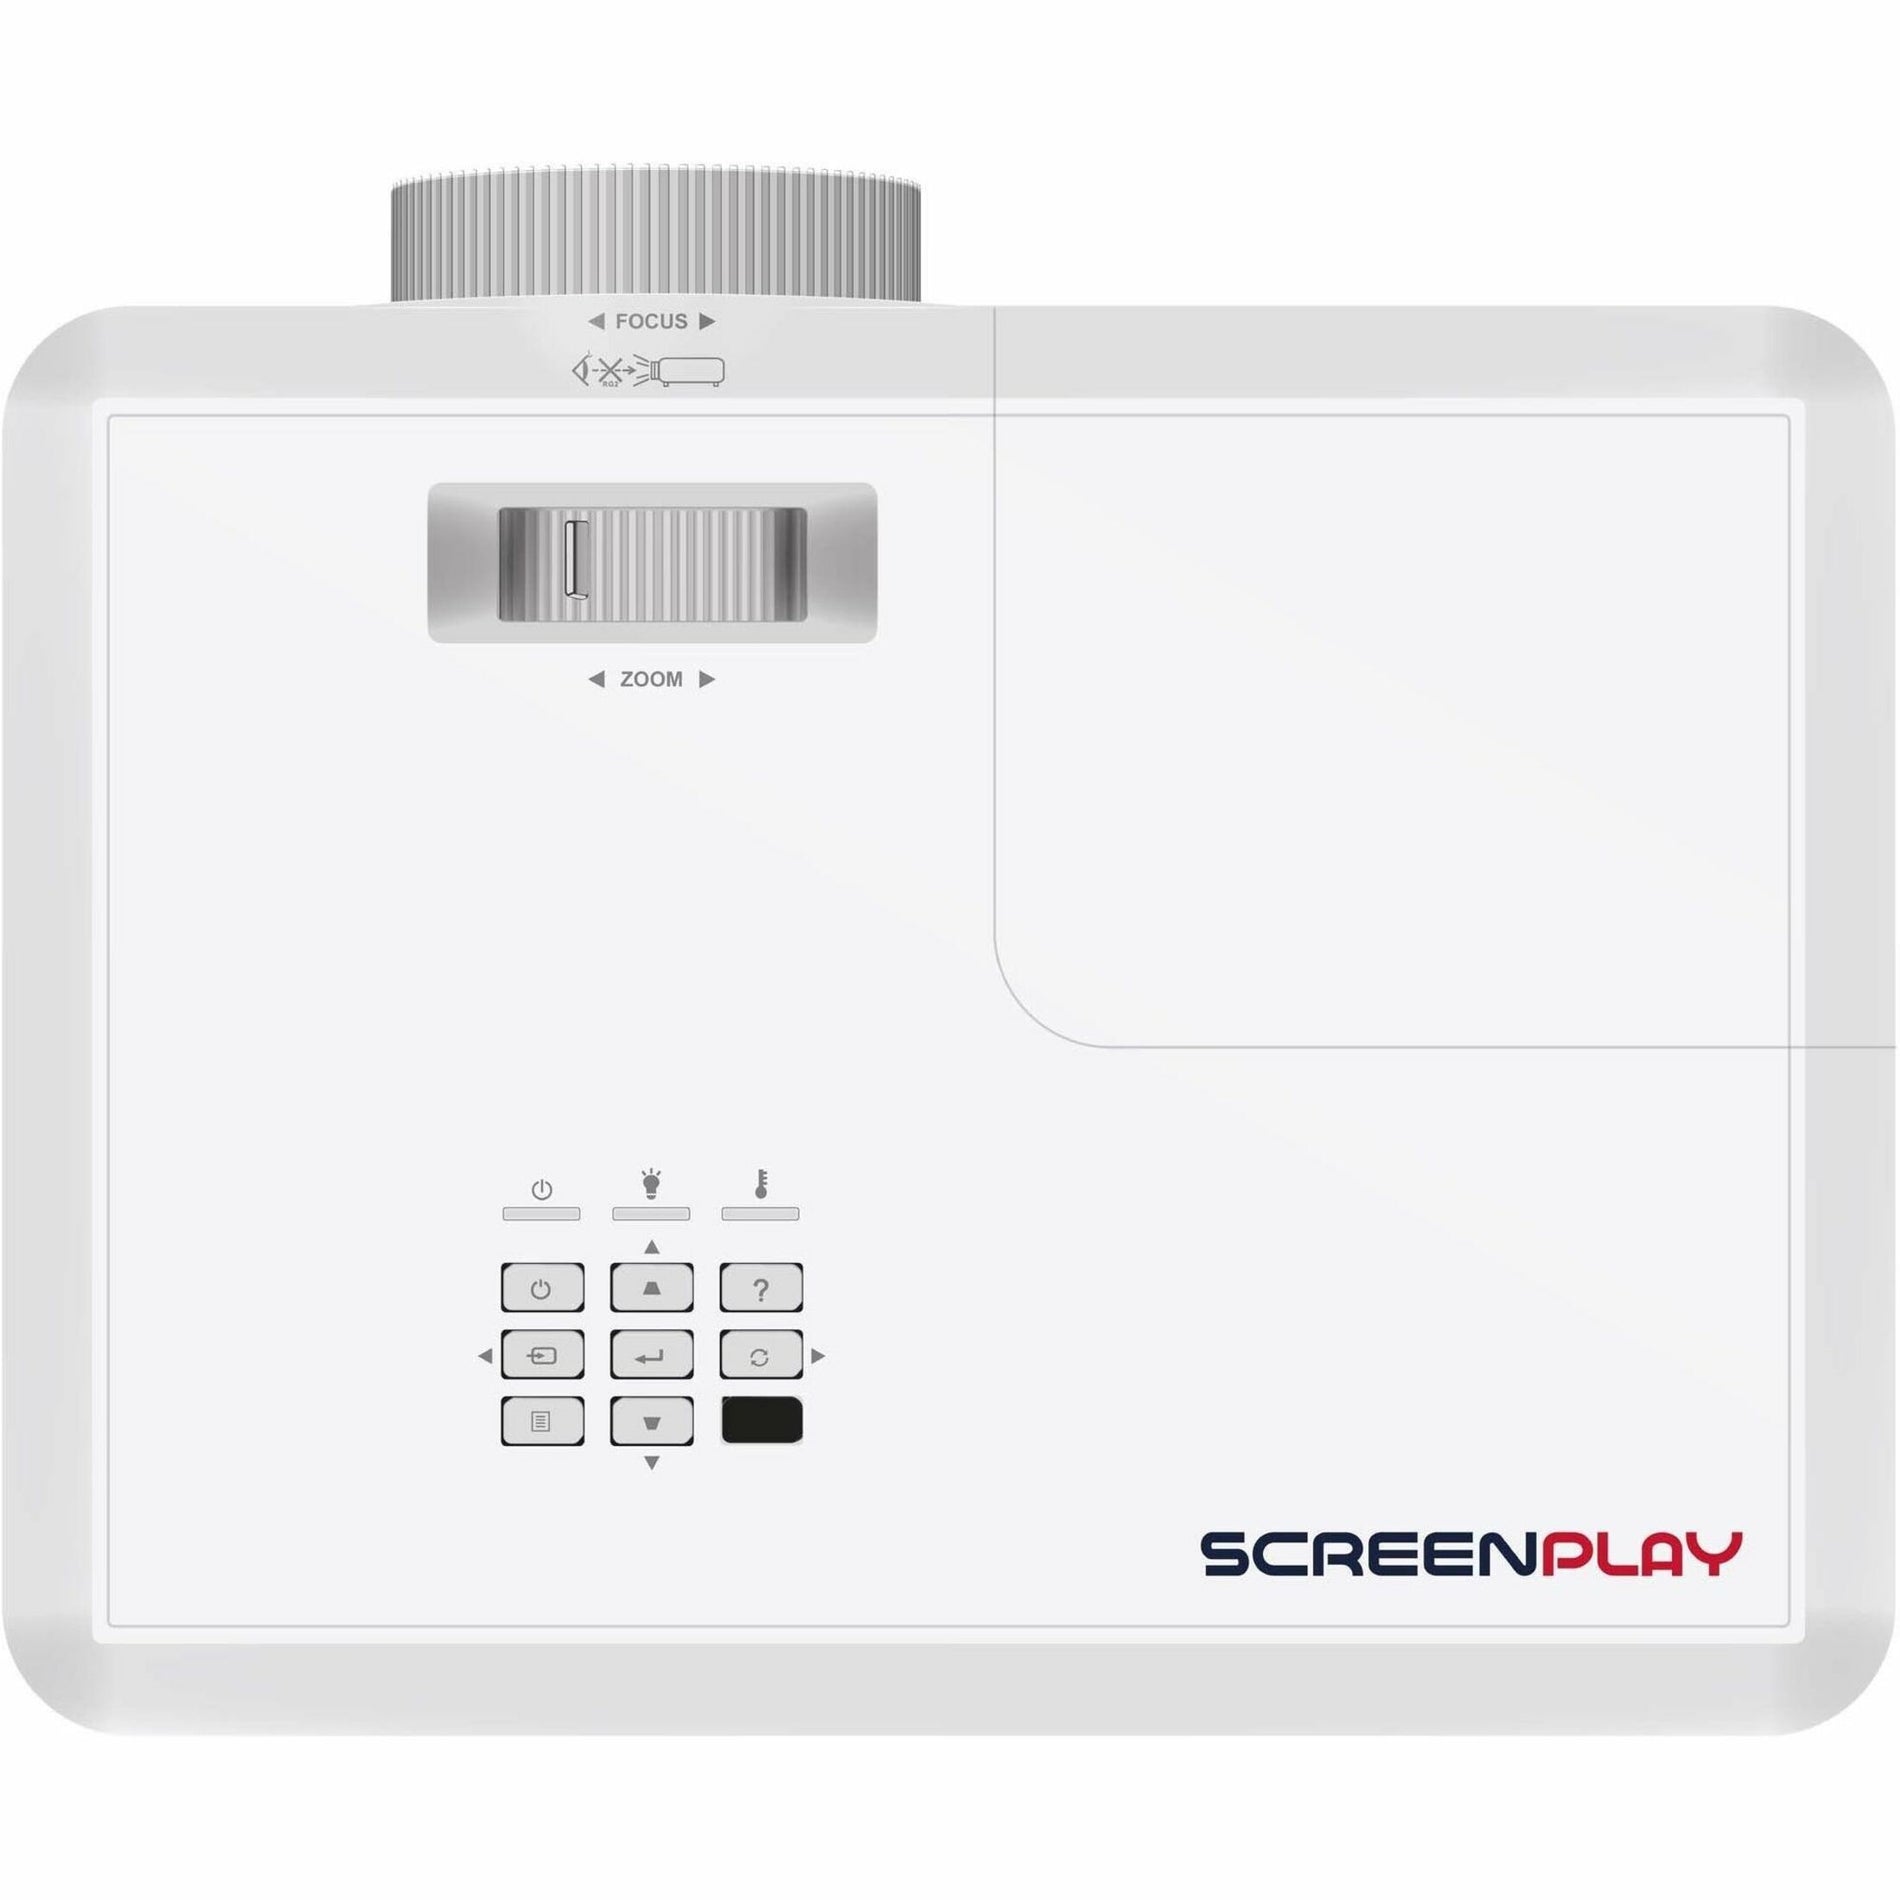 InFocus SP124 ScreenPlay Genesis I DLP Projector, Portable, XGA, 4000 lm, 3D